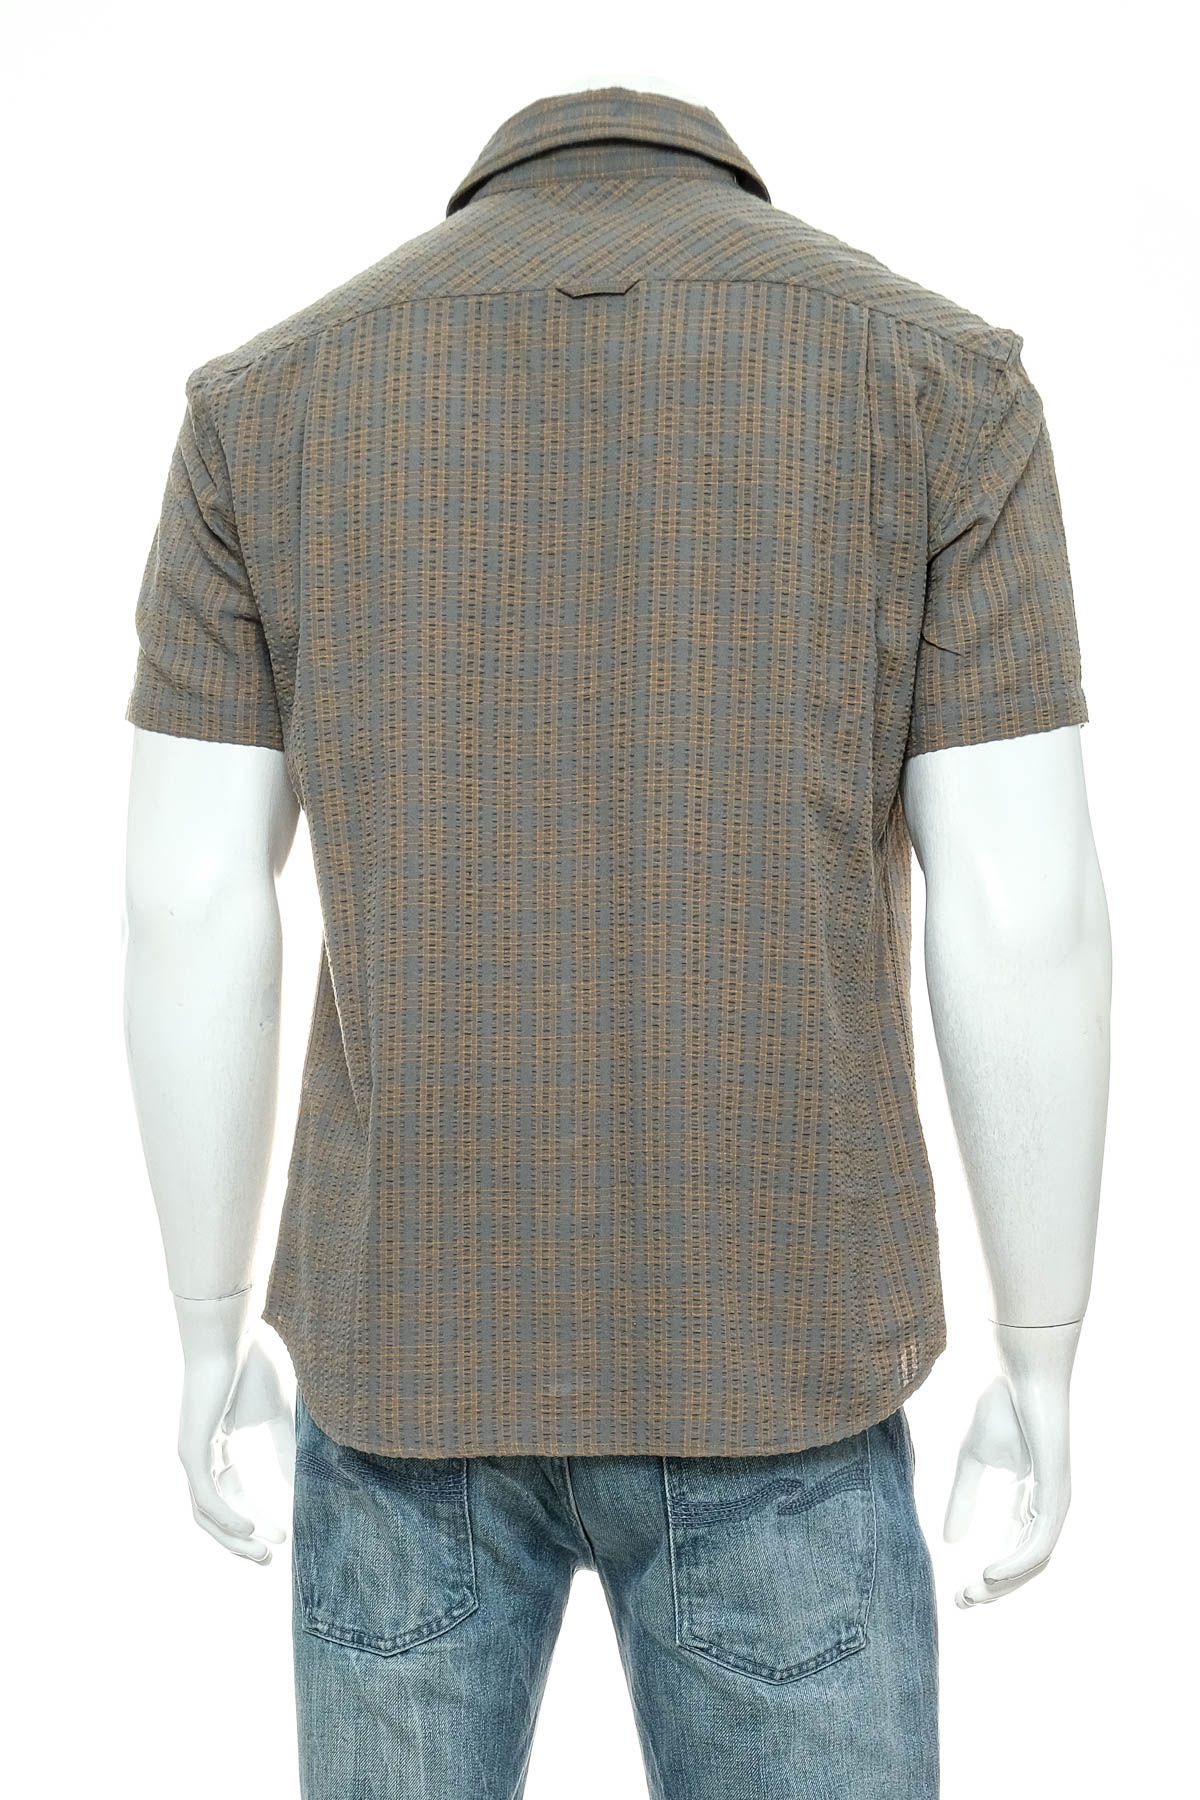 Ανδρικό πουκάμισο - Vaude - 1